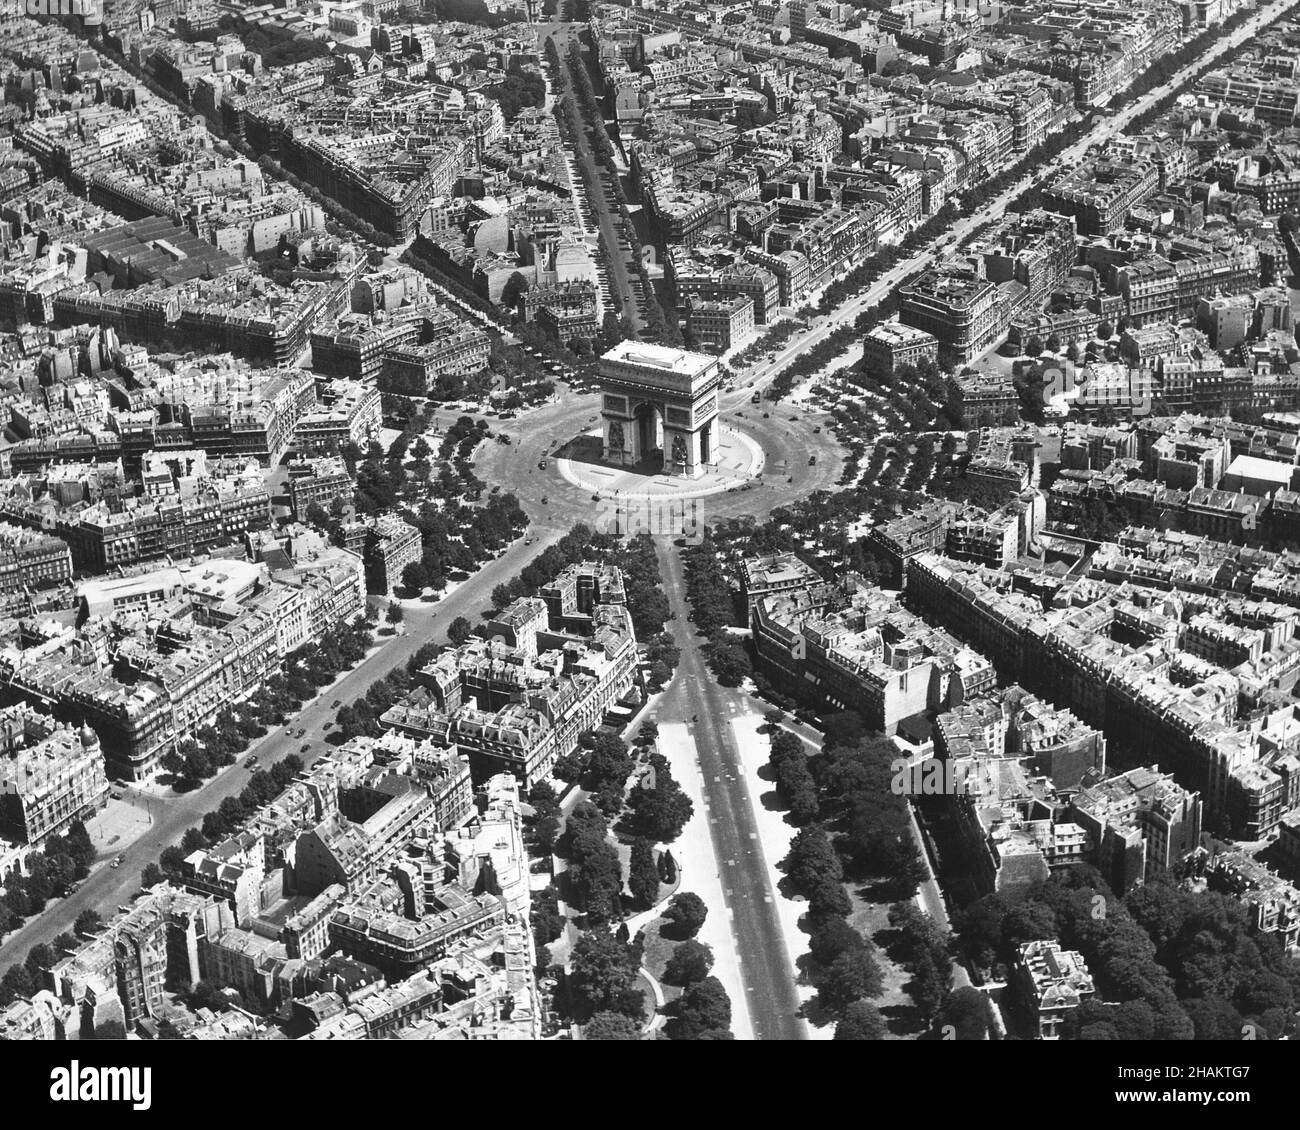 Paris - photo aérienne de bas niveau centrée sur l'Arc de Triomphe pendant l'occupation, 1944.La vue sur les rues de Paris qui rayonnent de l'Arc de Triomphe a été prise d'un avion américain à vol lent en utilisant une méthode photo appelée oblique de bas niveau.La position de la caméra est à peu près à l'ouest de l'Arc de Triomphe et la rue qui pointe le plus vers le photographe est l'avenue Foch.L'avenue des champs-Elysées s'étend du centre au coin supérieur droit de l'image.Il y a moins de trente véhicules automobiles sur la place circulaire de l'Etoile autour de la célèbre Arche. Banque D'Images